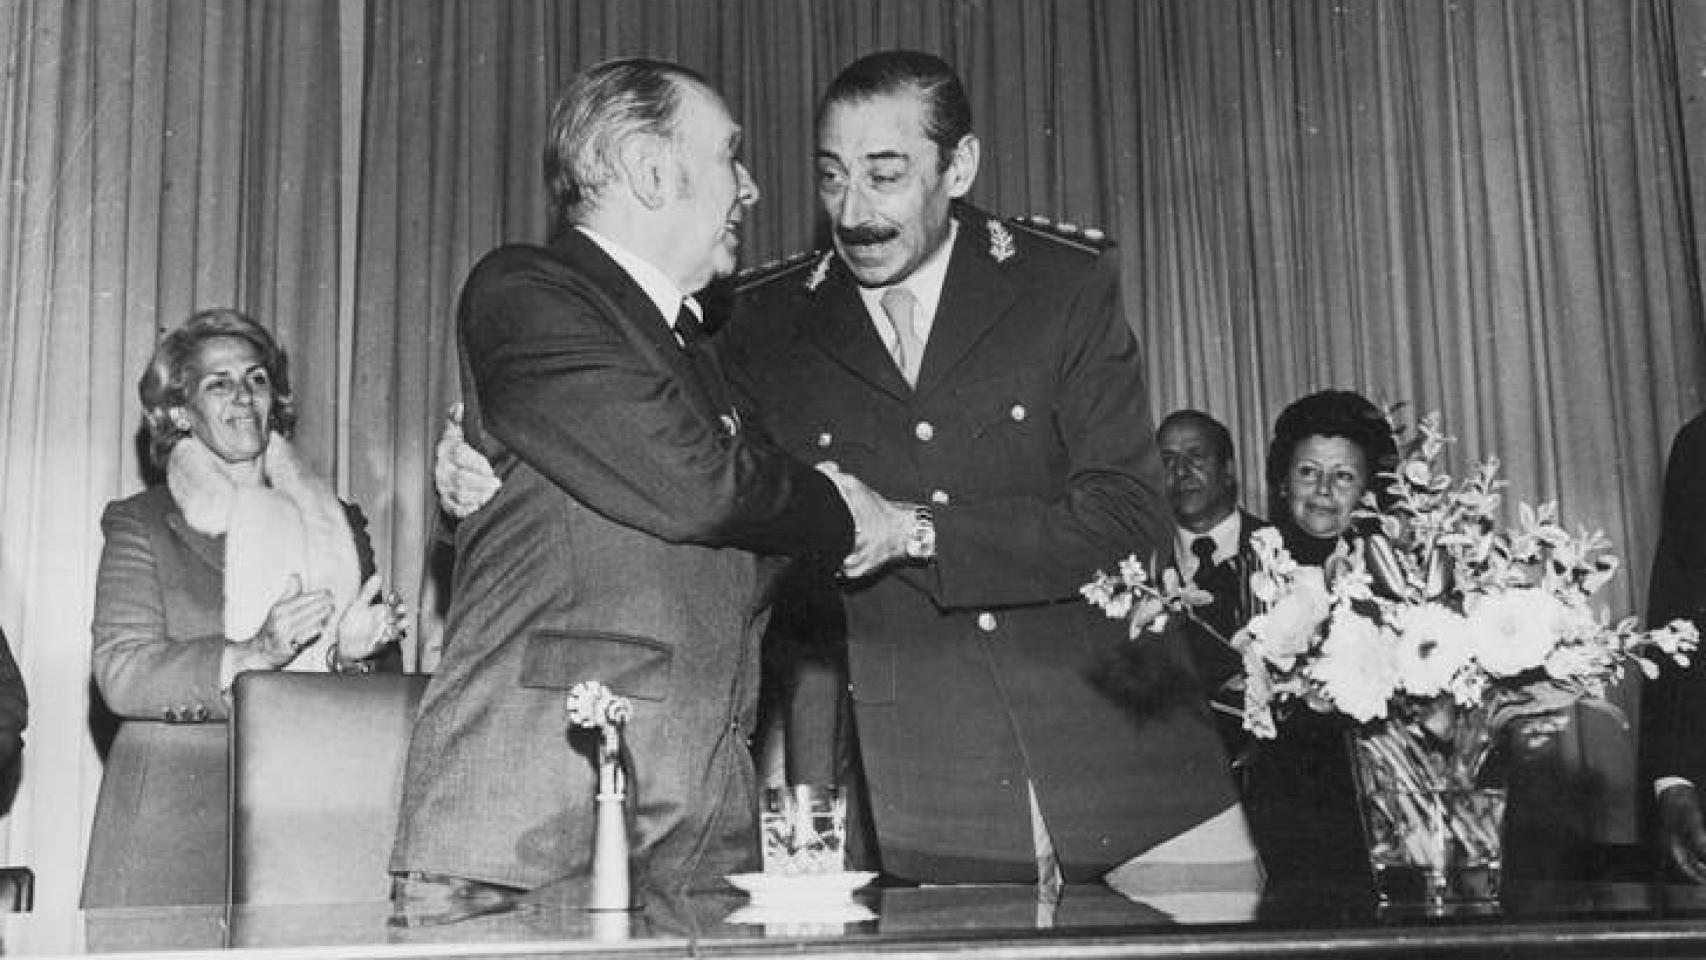 Jorge Luís Borge y el general Videla.